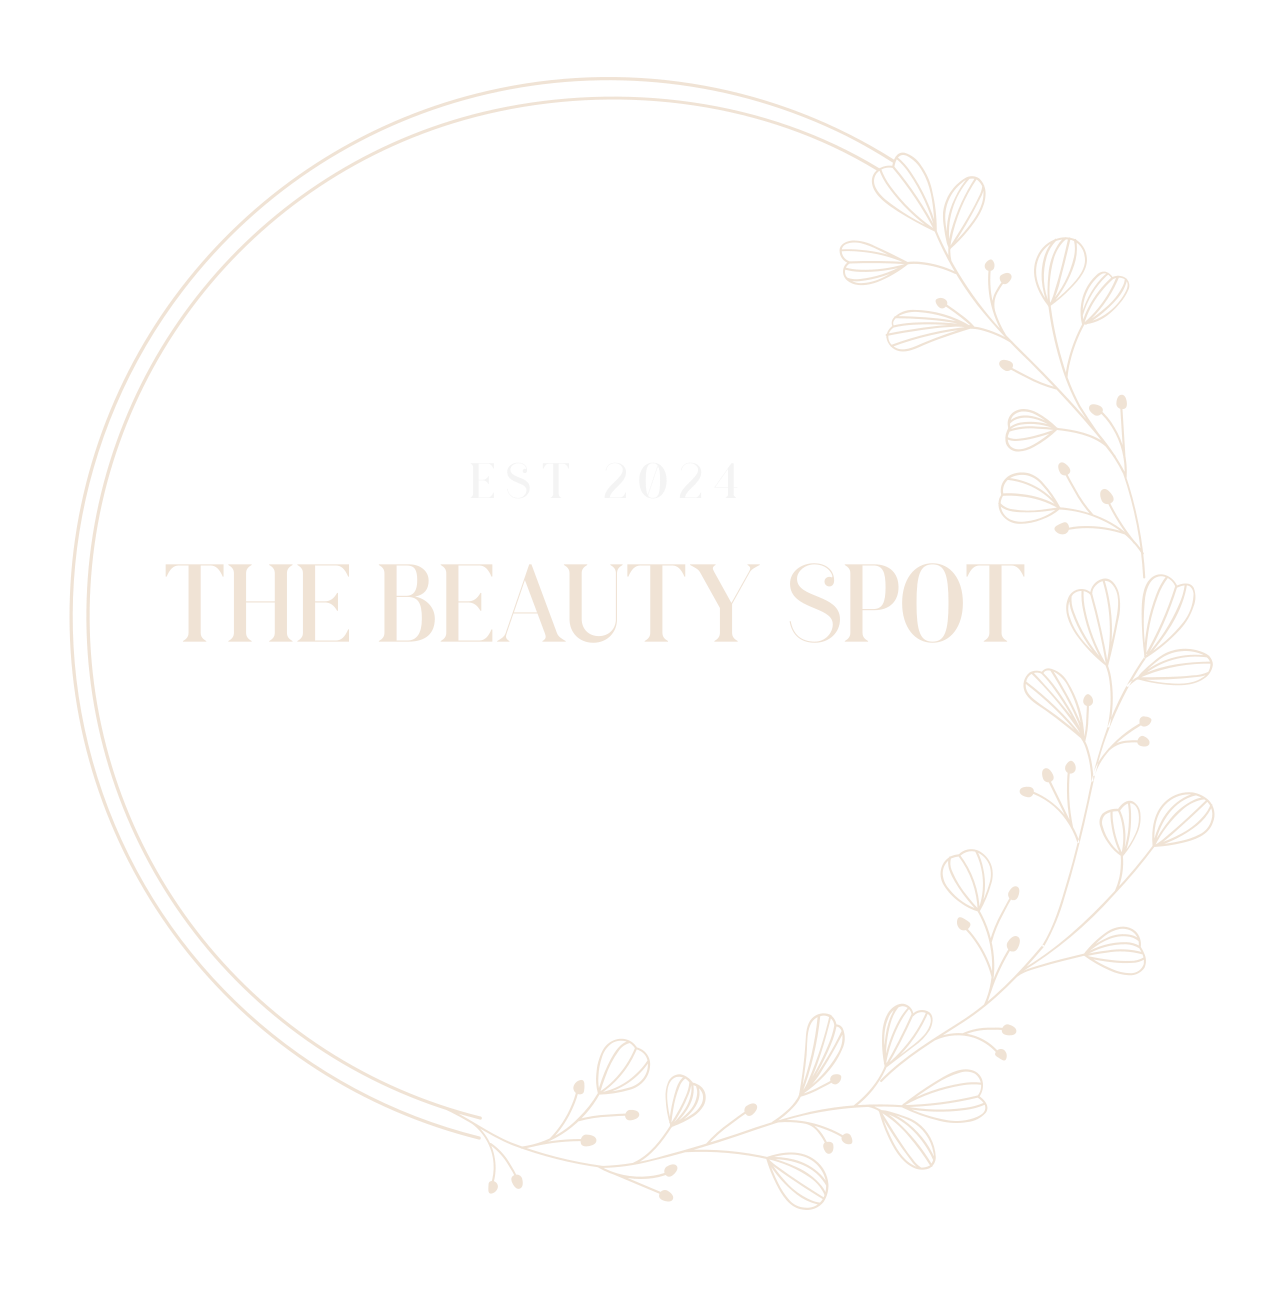 THE BEAUTY SPOT's logo